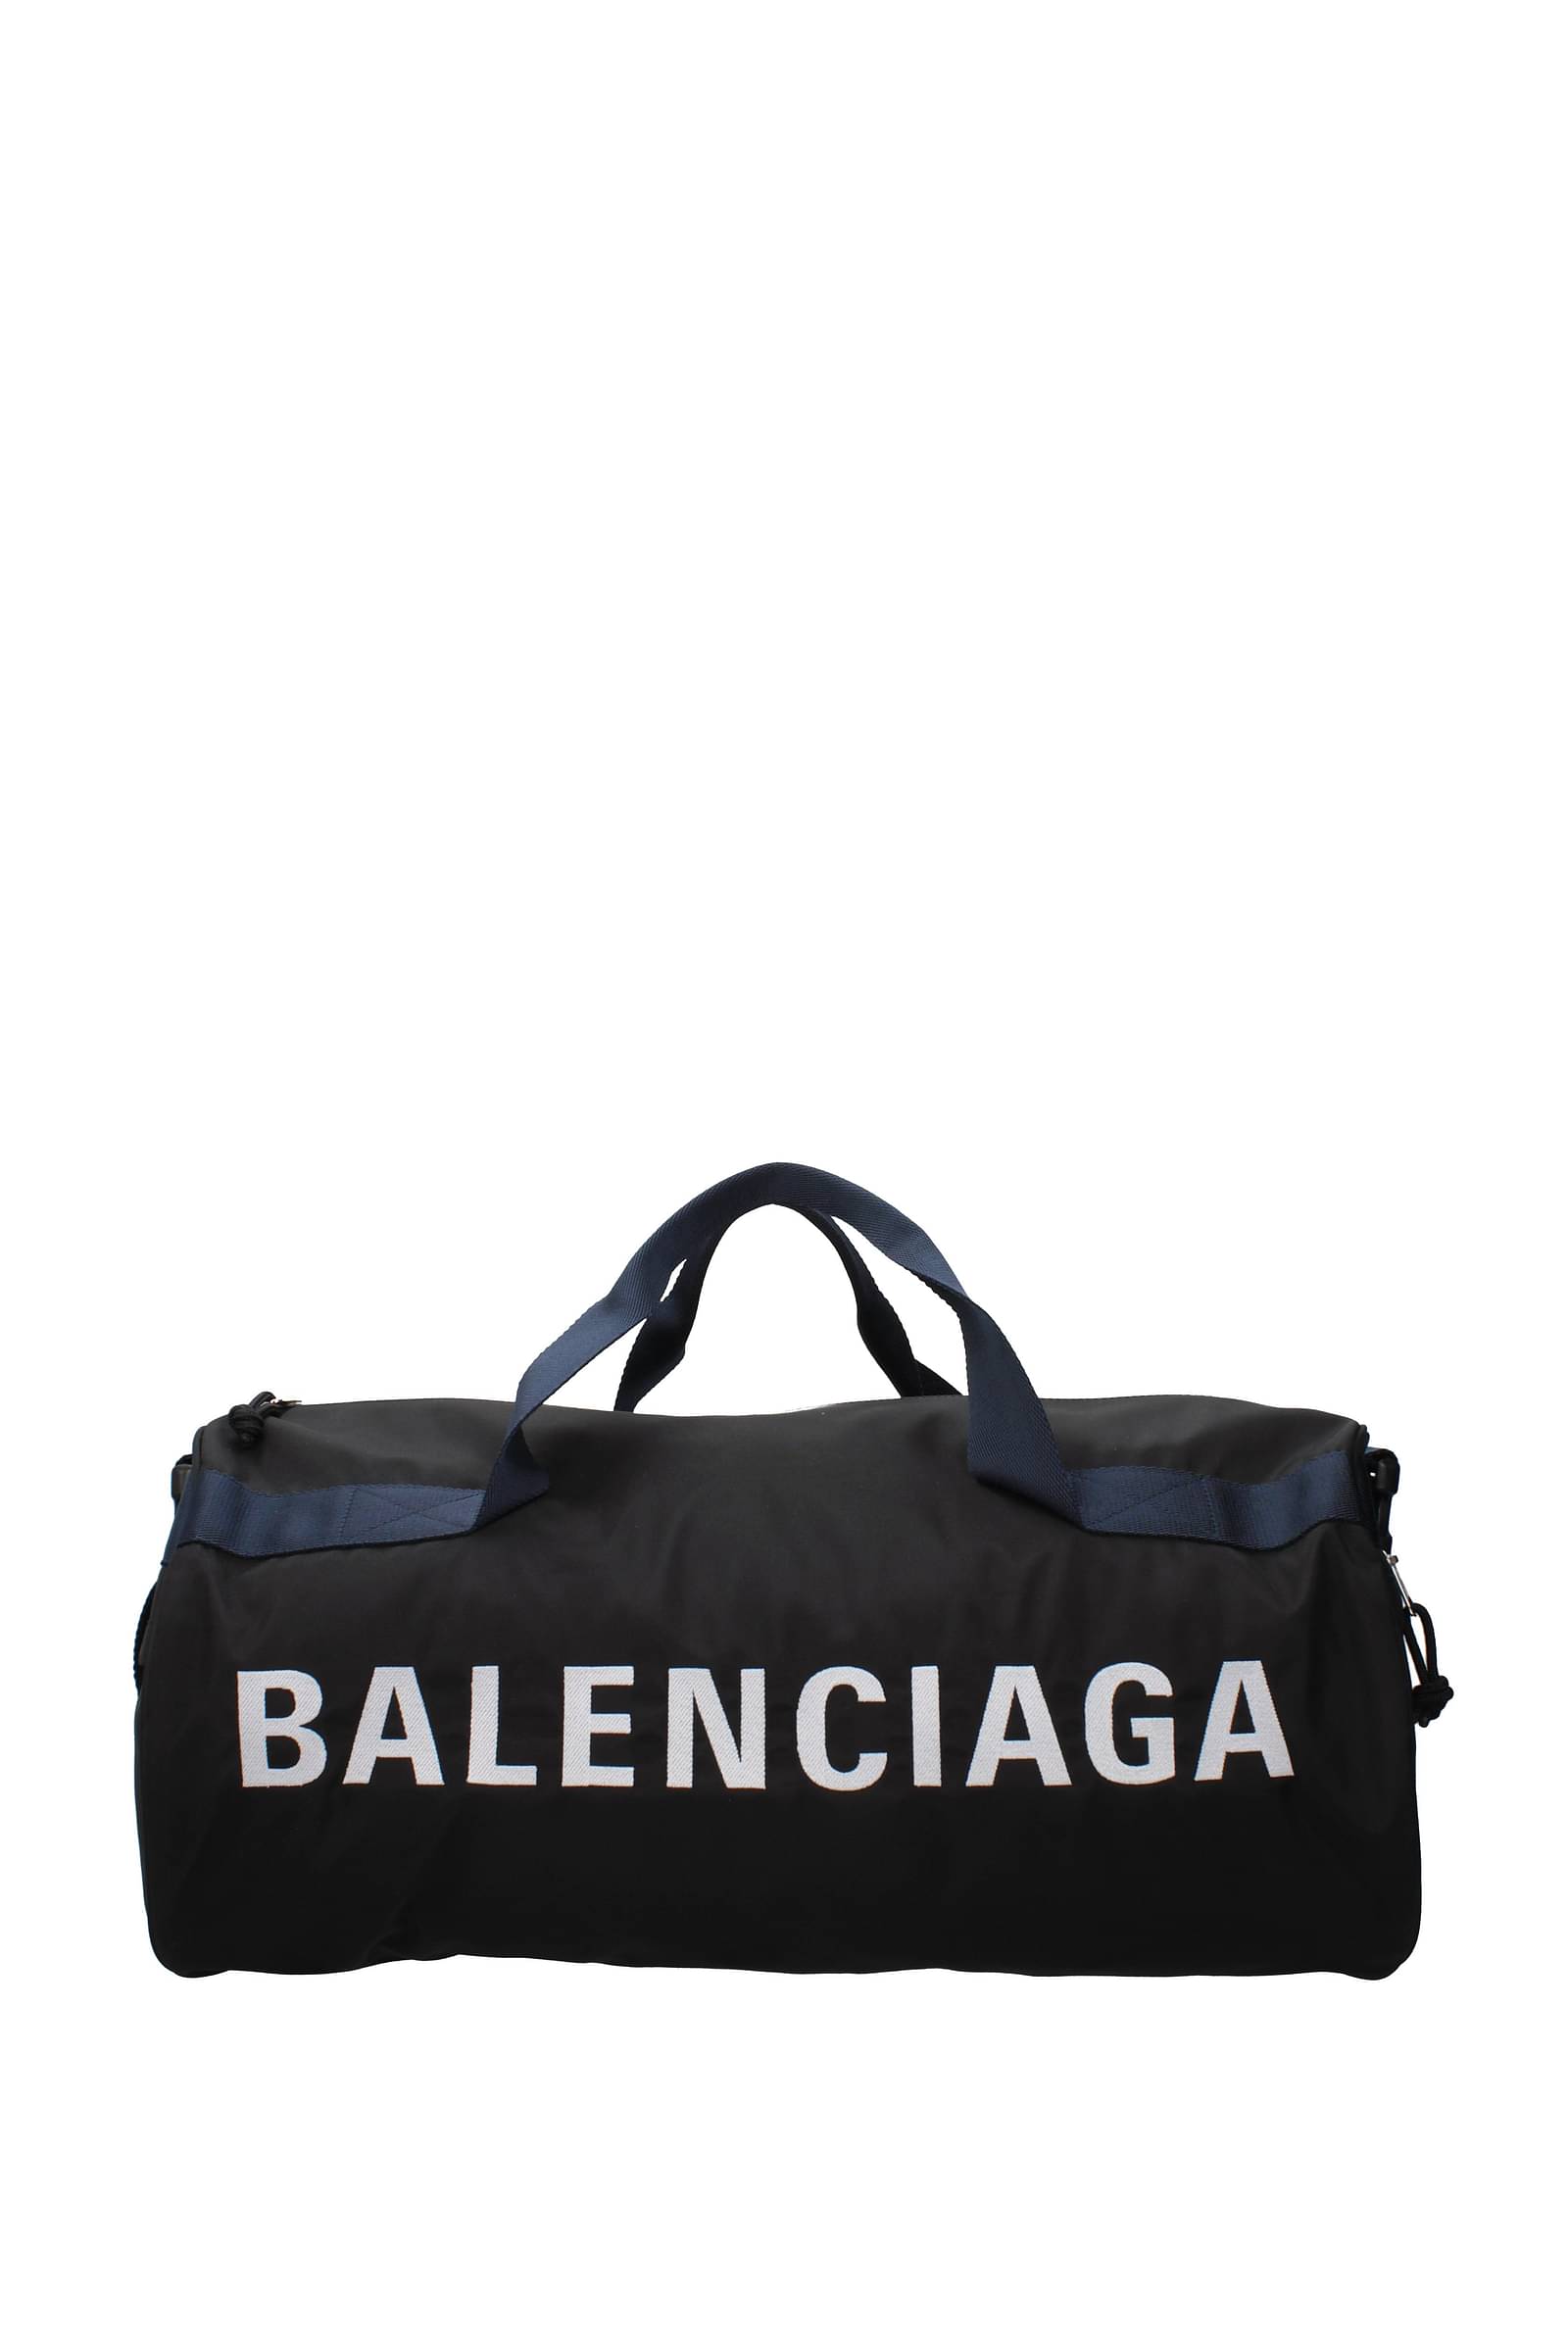 Balenciaga トラベルバッグ 男性 581807HPG1X1090 ファブリック 黒 680€